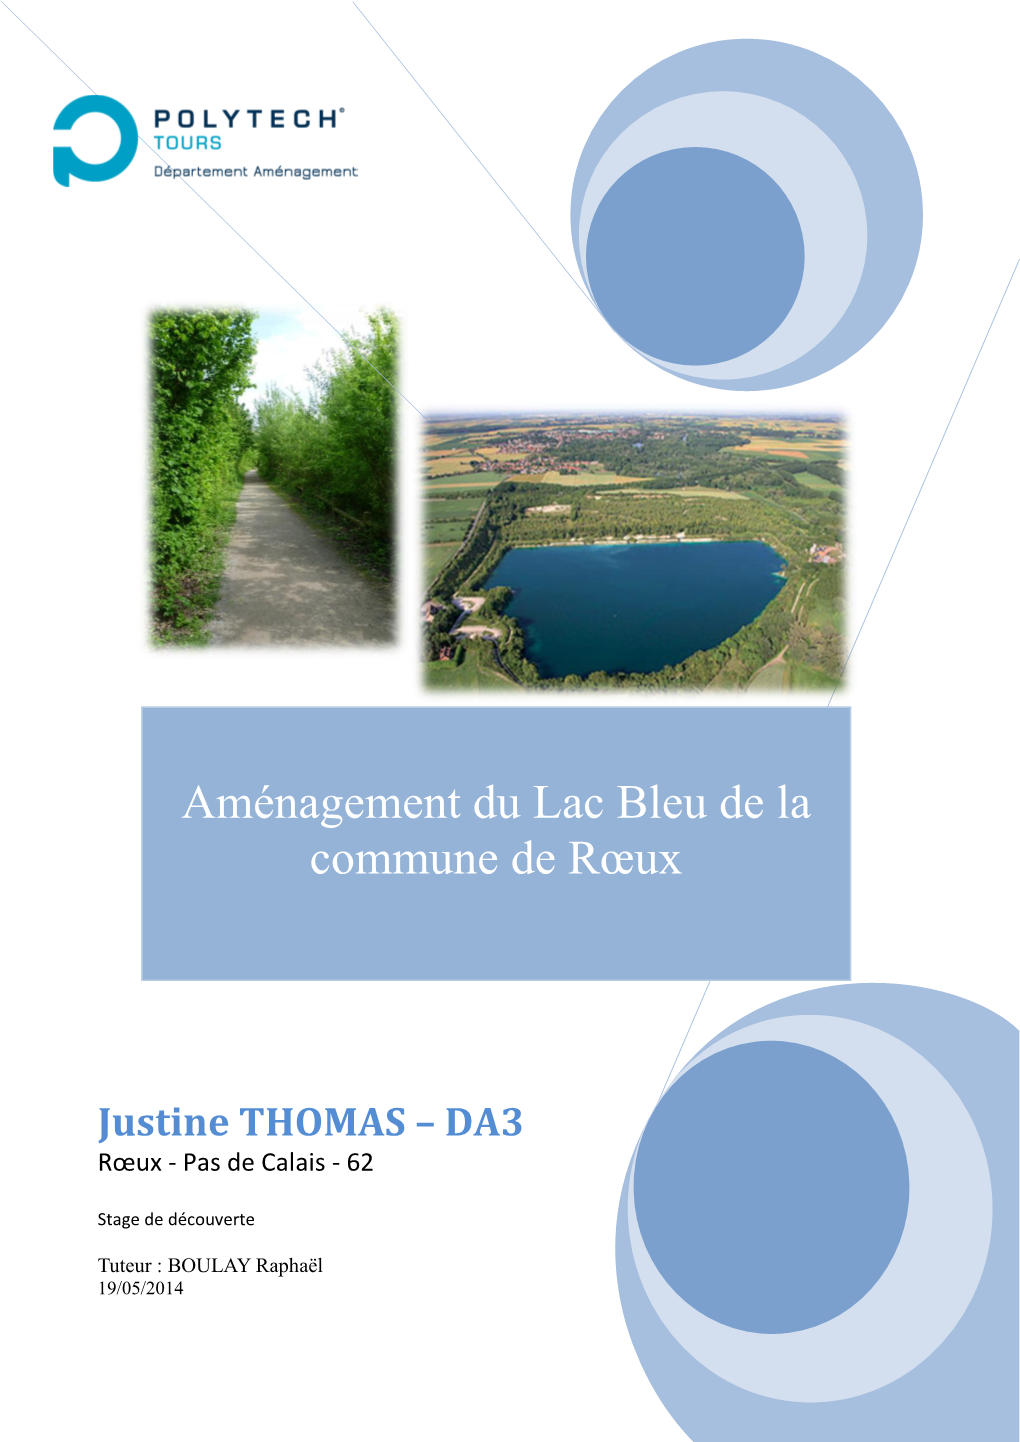 Justine THOMAS – DA3 Rœux - Pas De Calais - 62